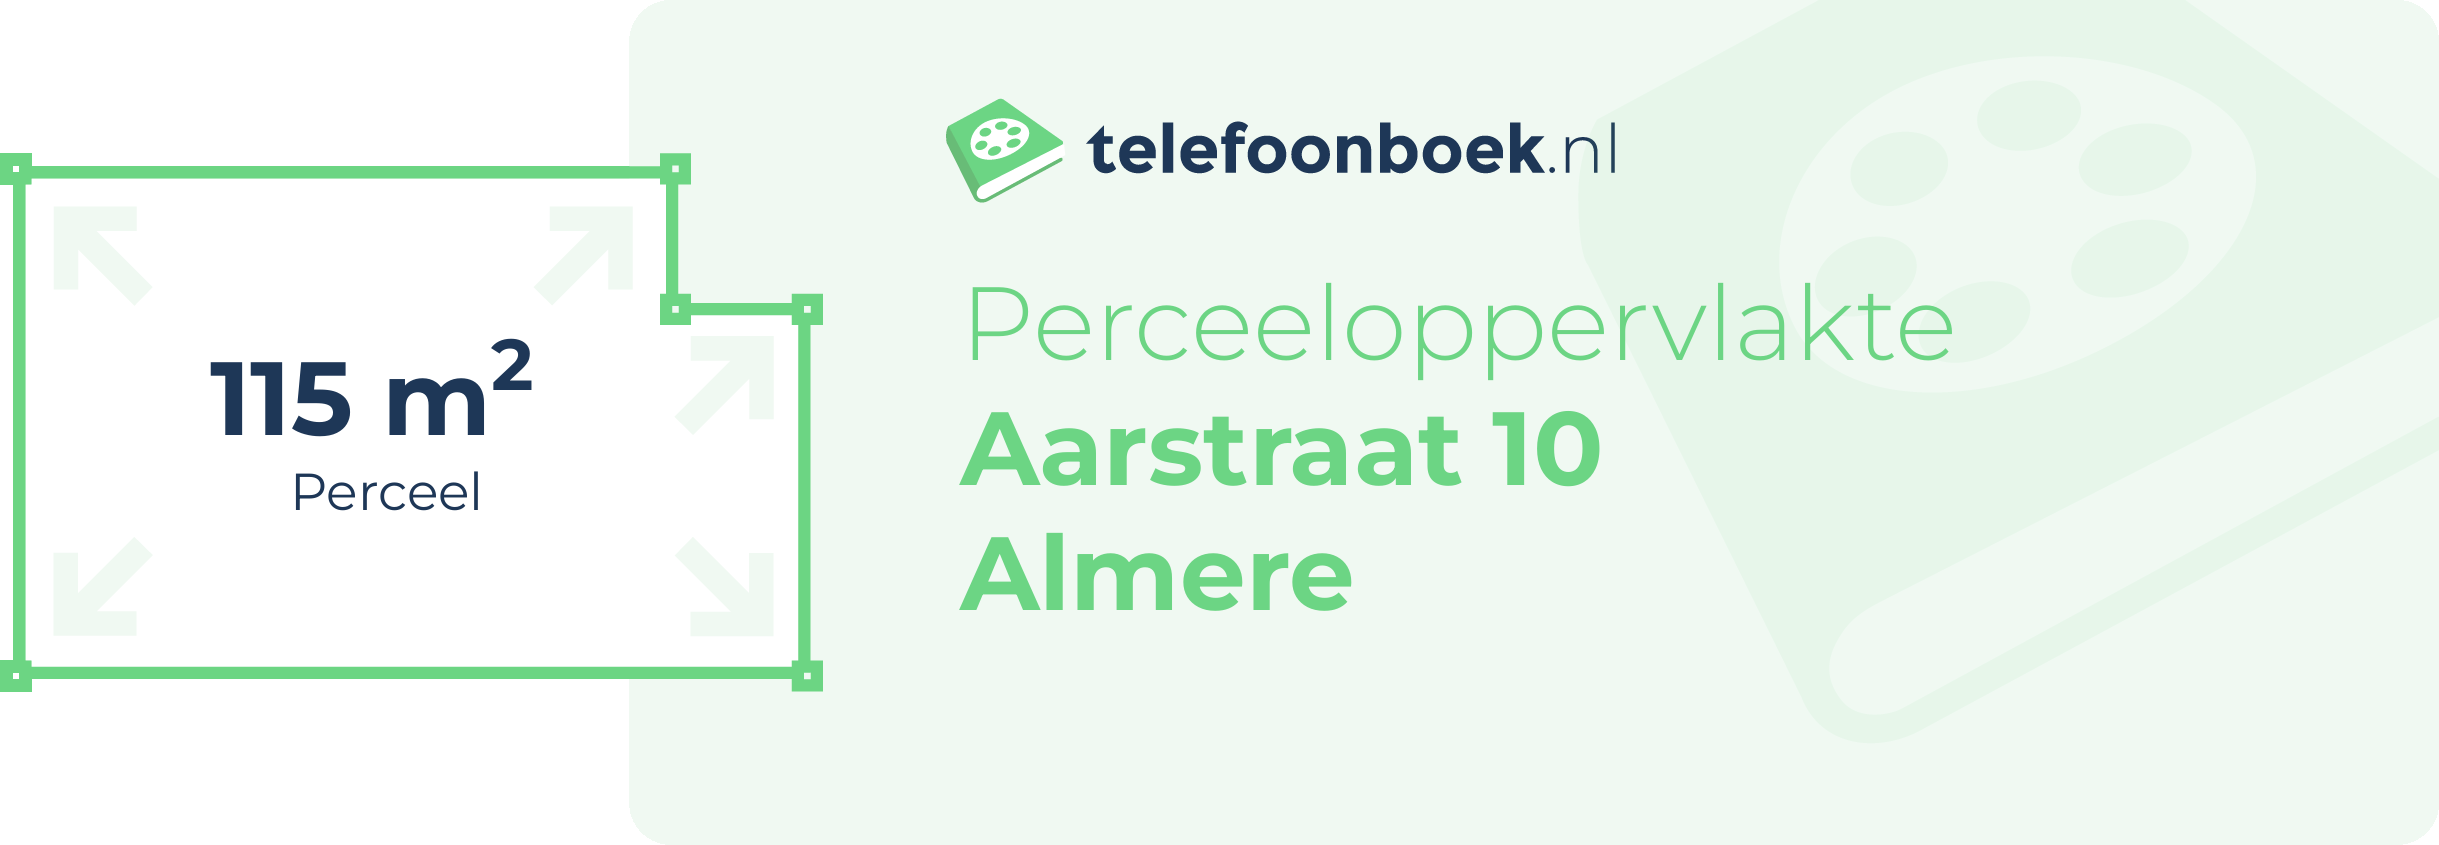 Perceeloppervlakte Aarstraat 10 Almere